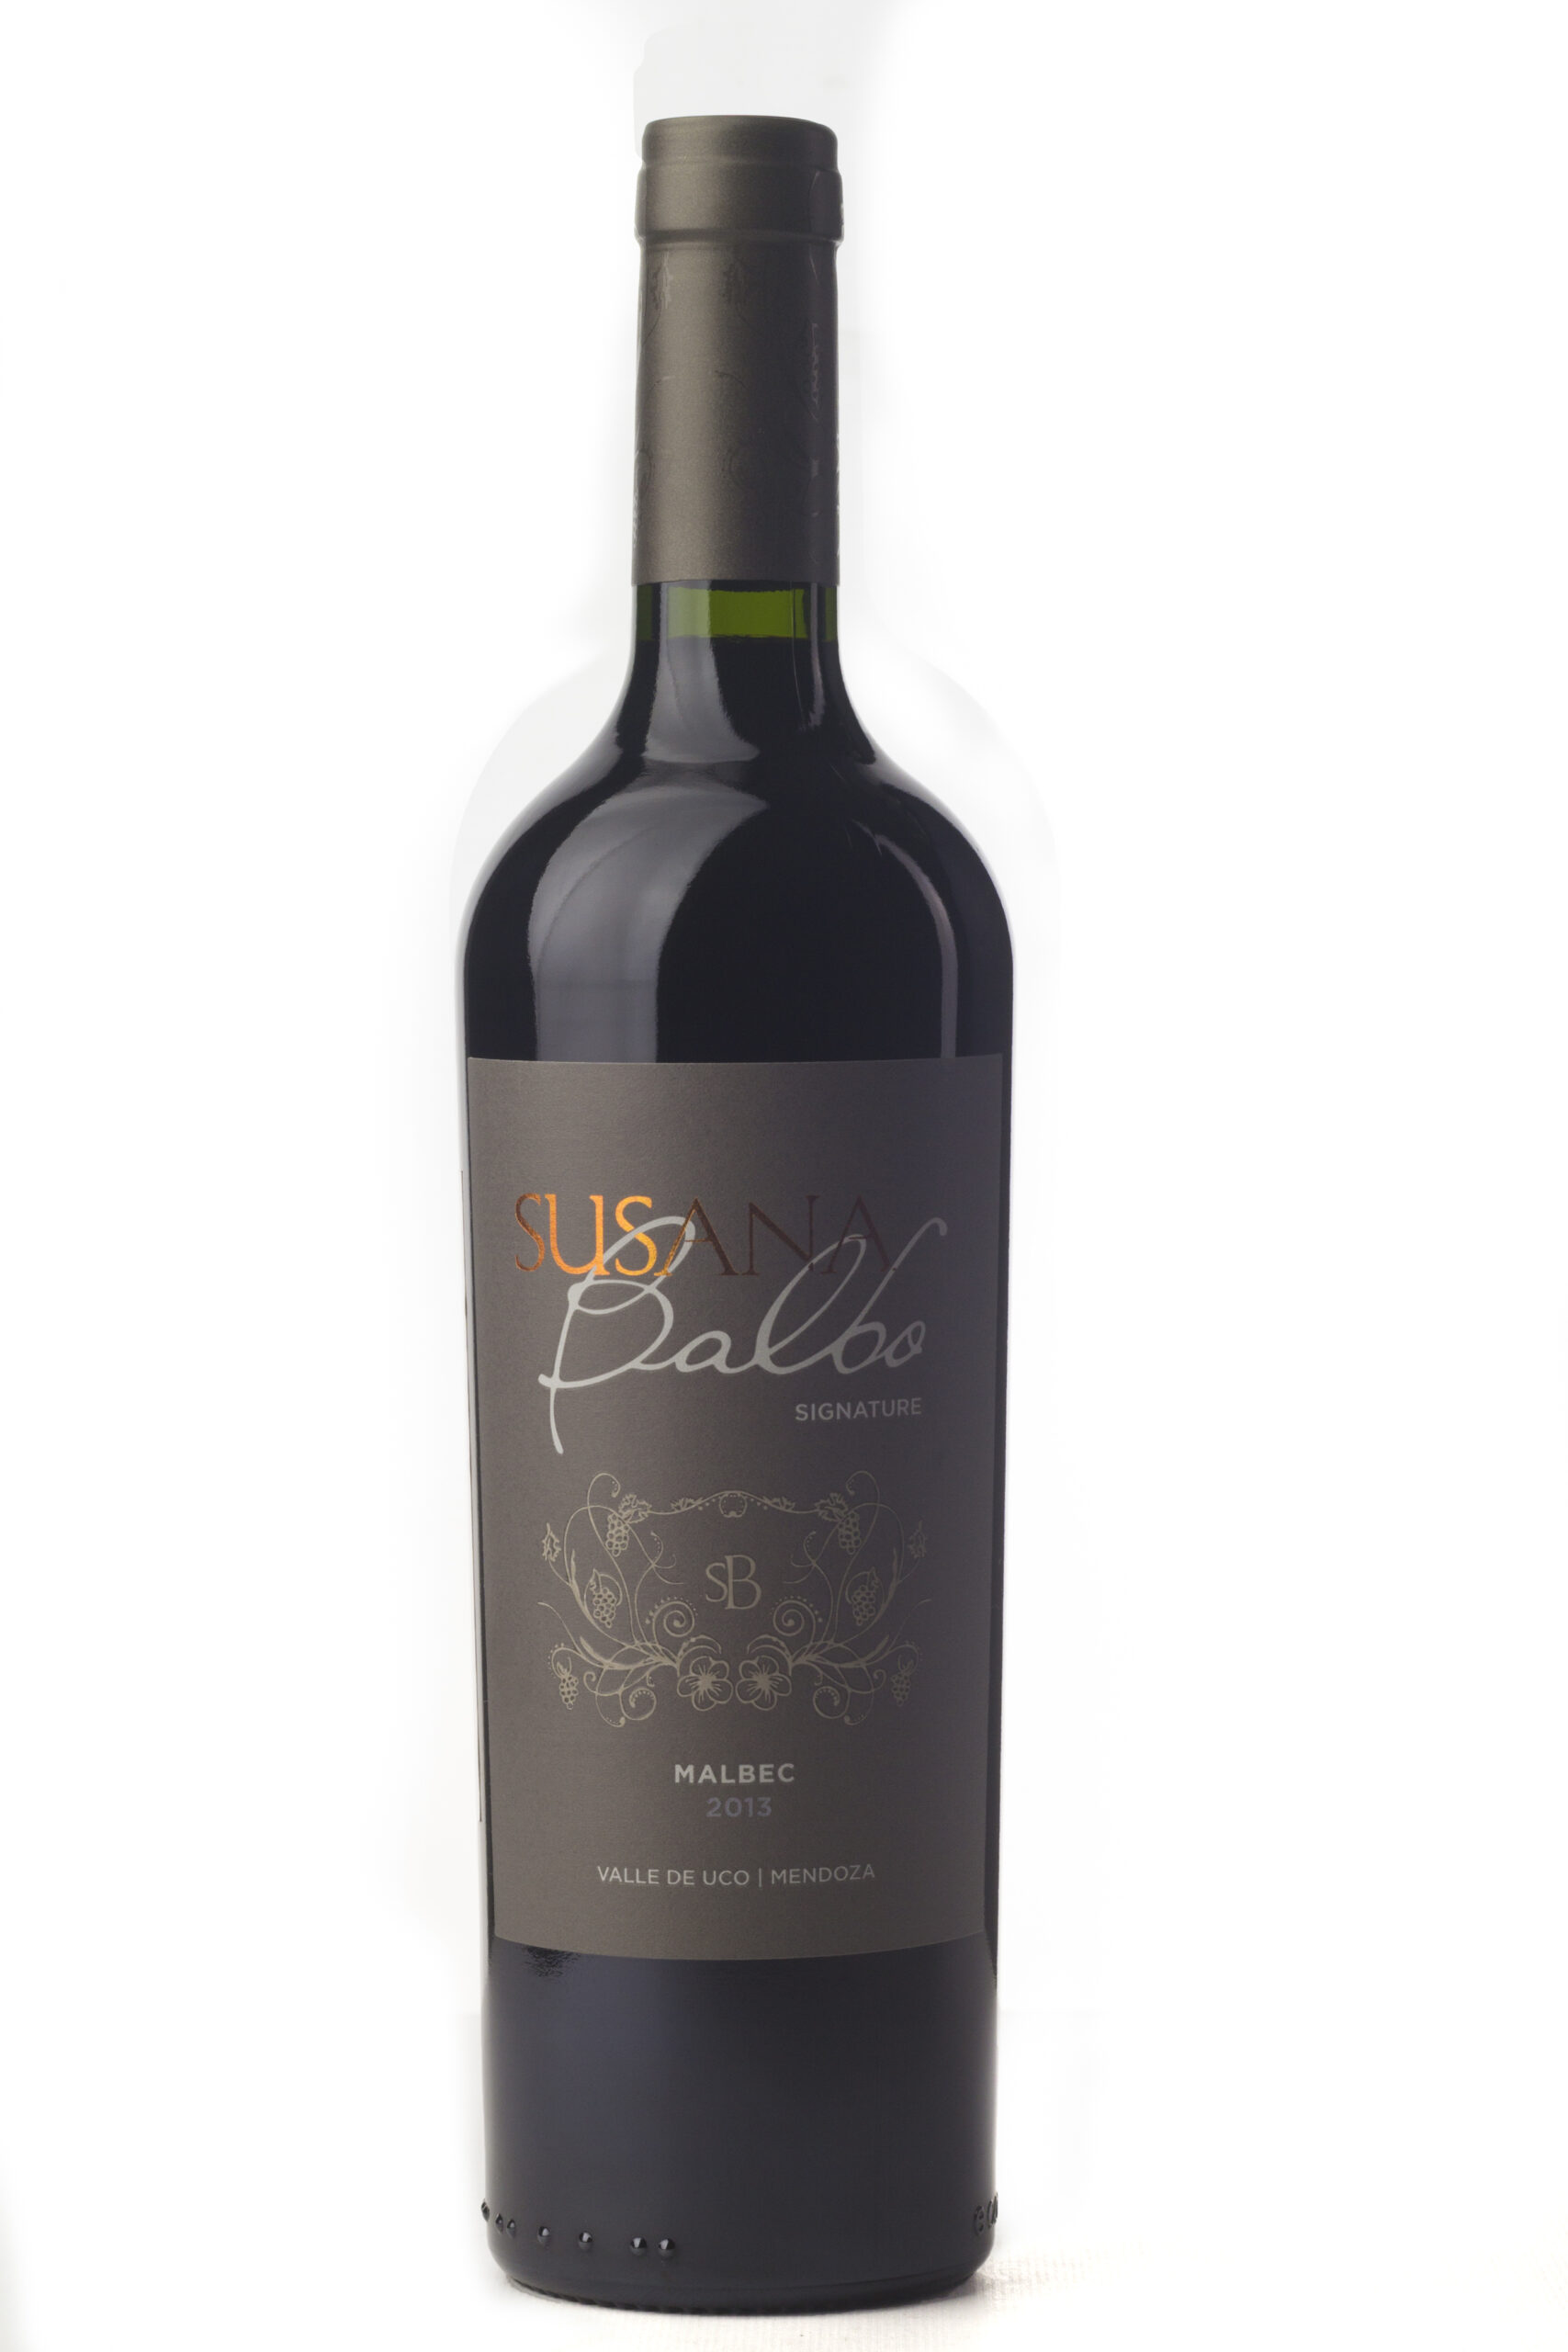 Cinq wines- vinos en Guatemala- Susana Balbo signature malbec